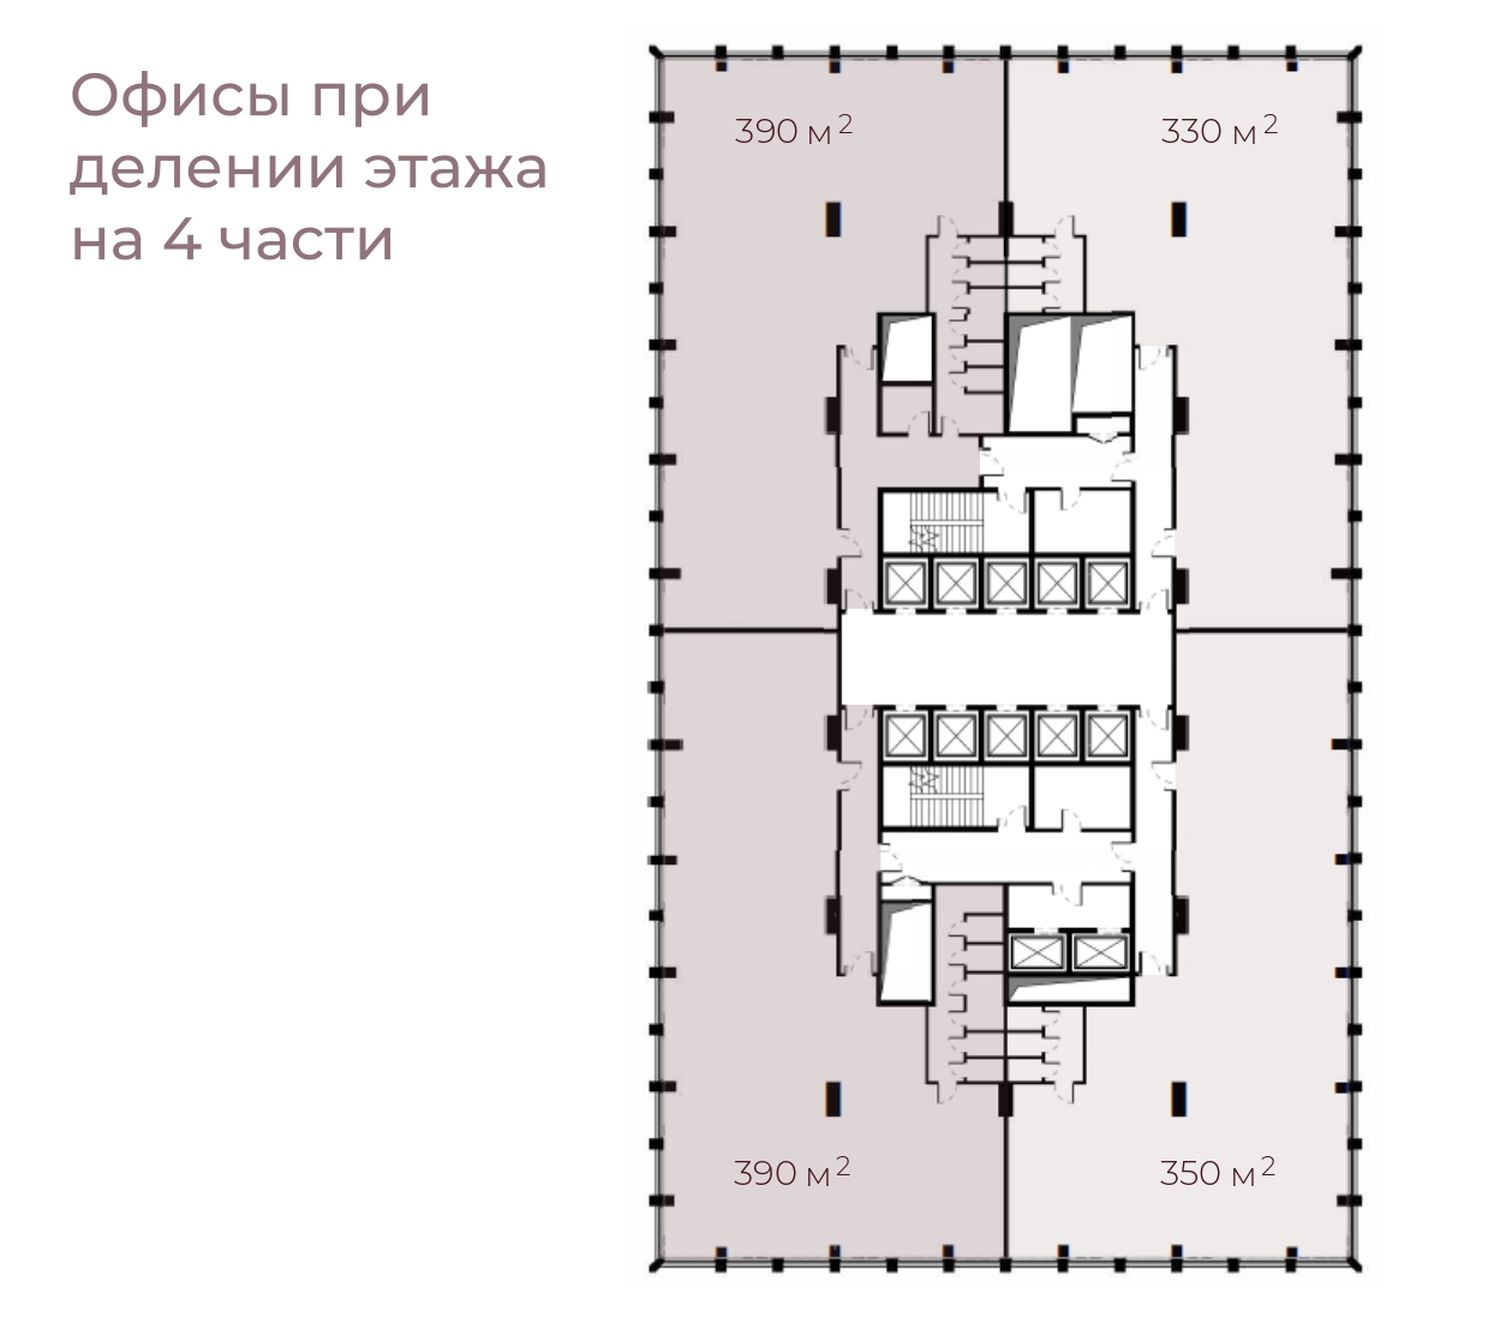 Офисы при делении этажа на 4 части STONE Дмитровская_page-0001